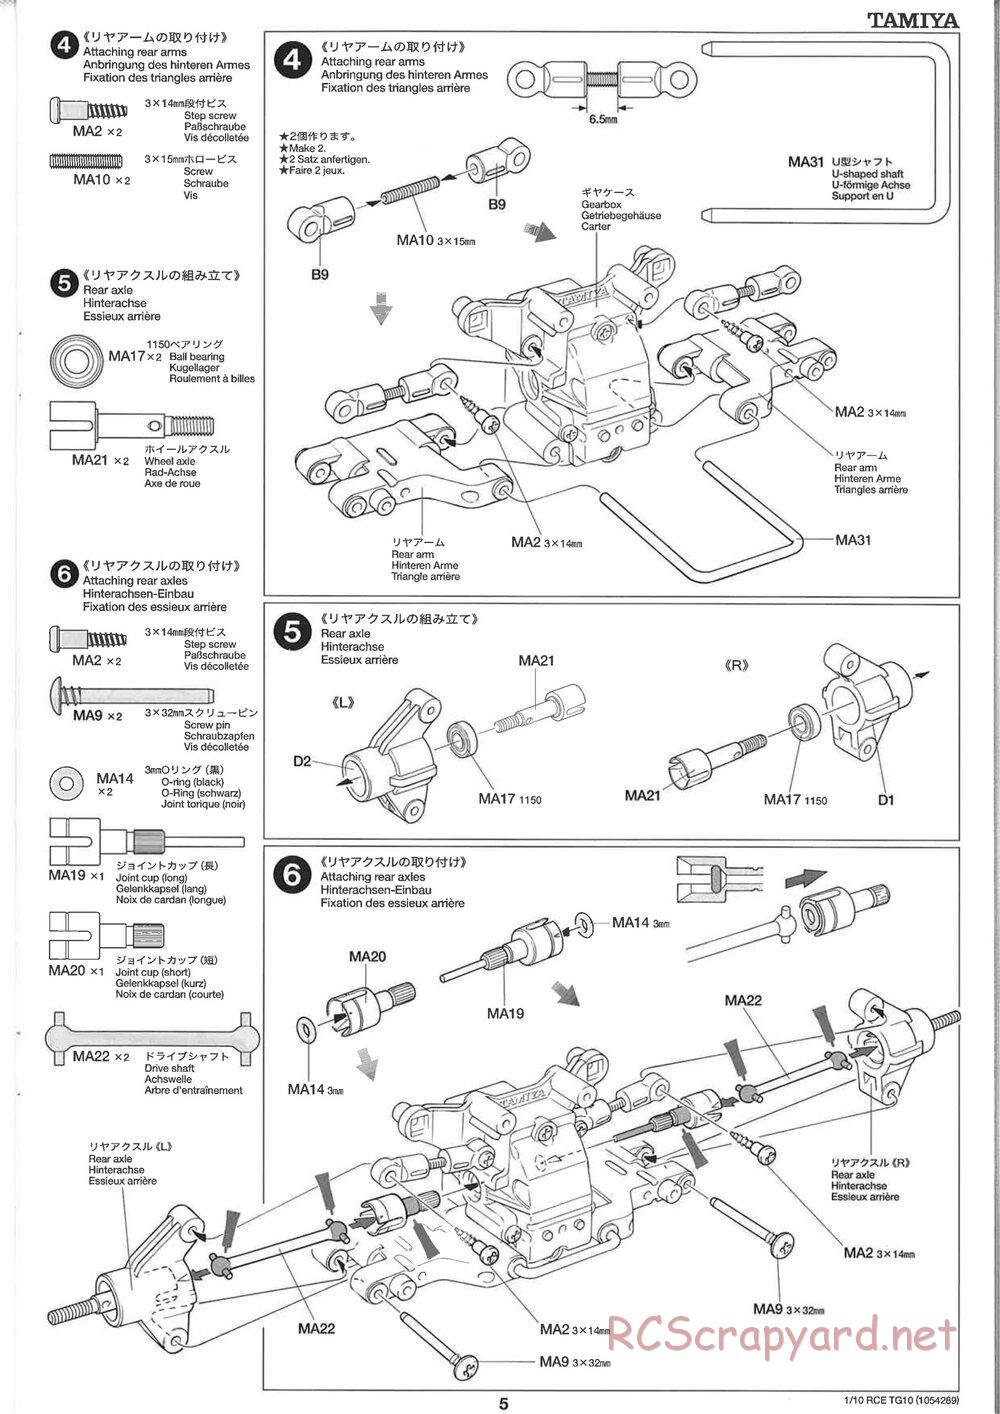 Tamiya - TG10 Mk.1 Chassis - Manual - Page 5